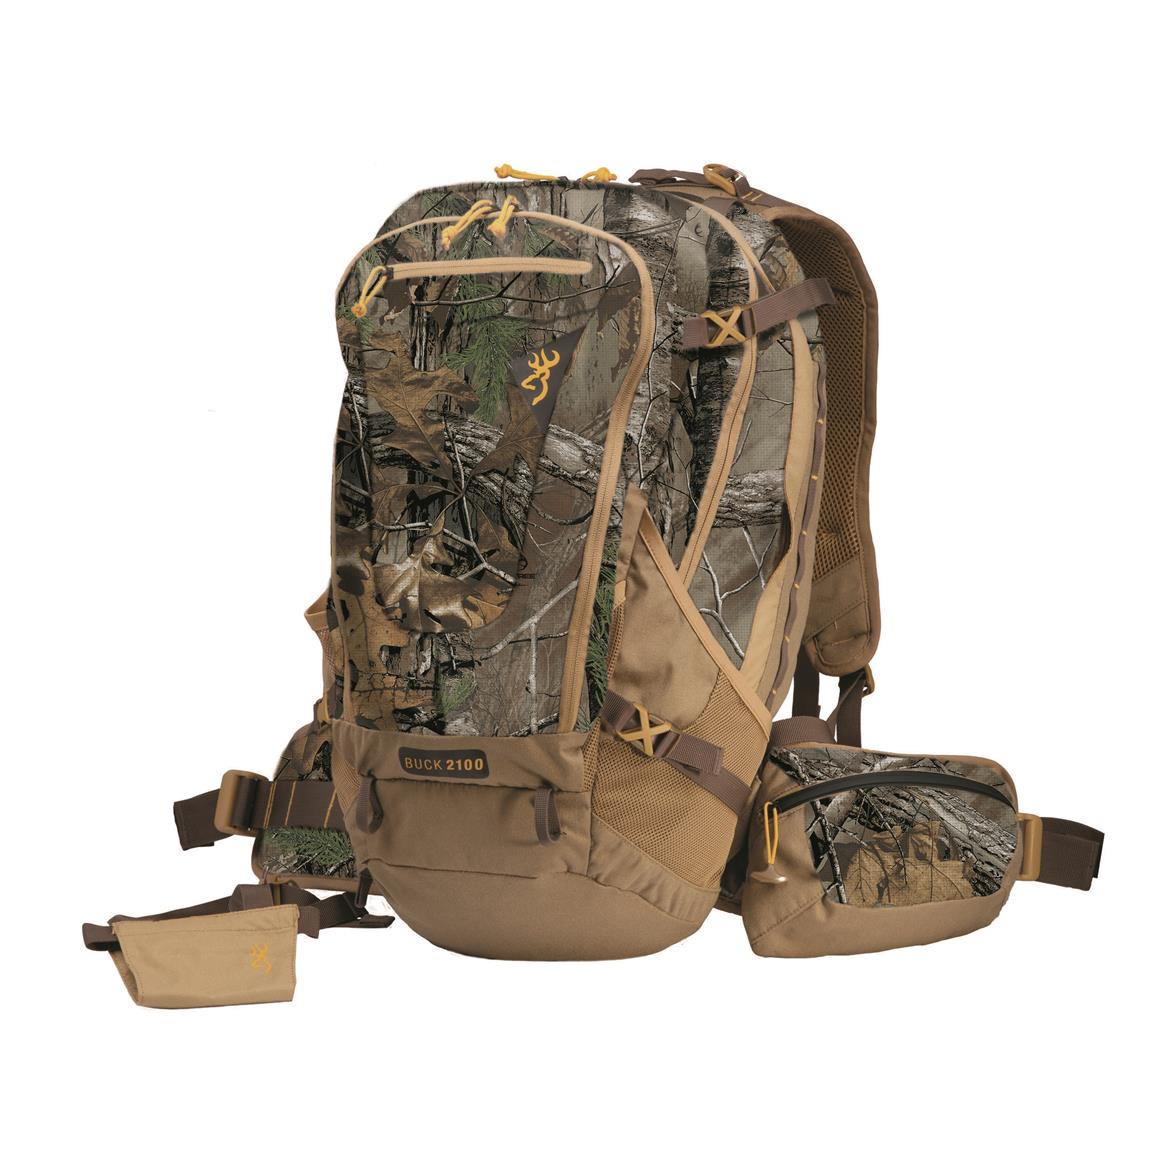 Browning Buck 2100 Camo Hunting Daypack - 680299, Hunting Backpacks at ...